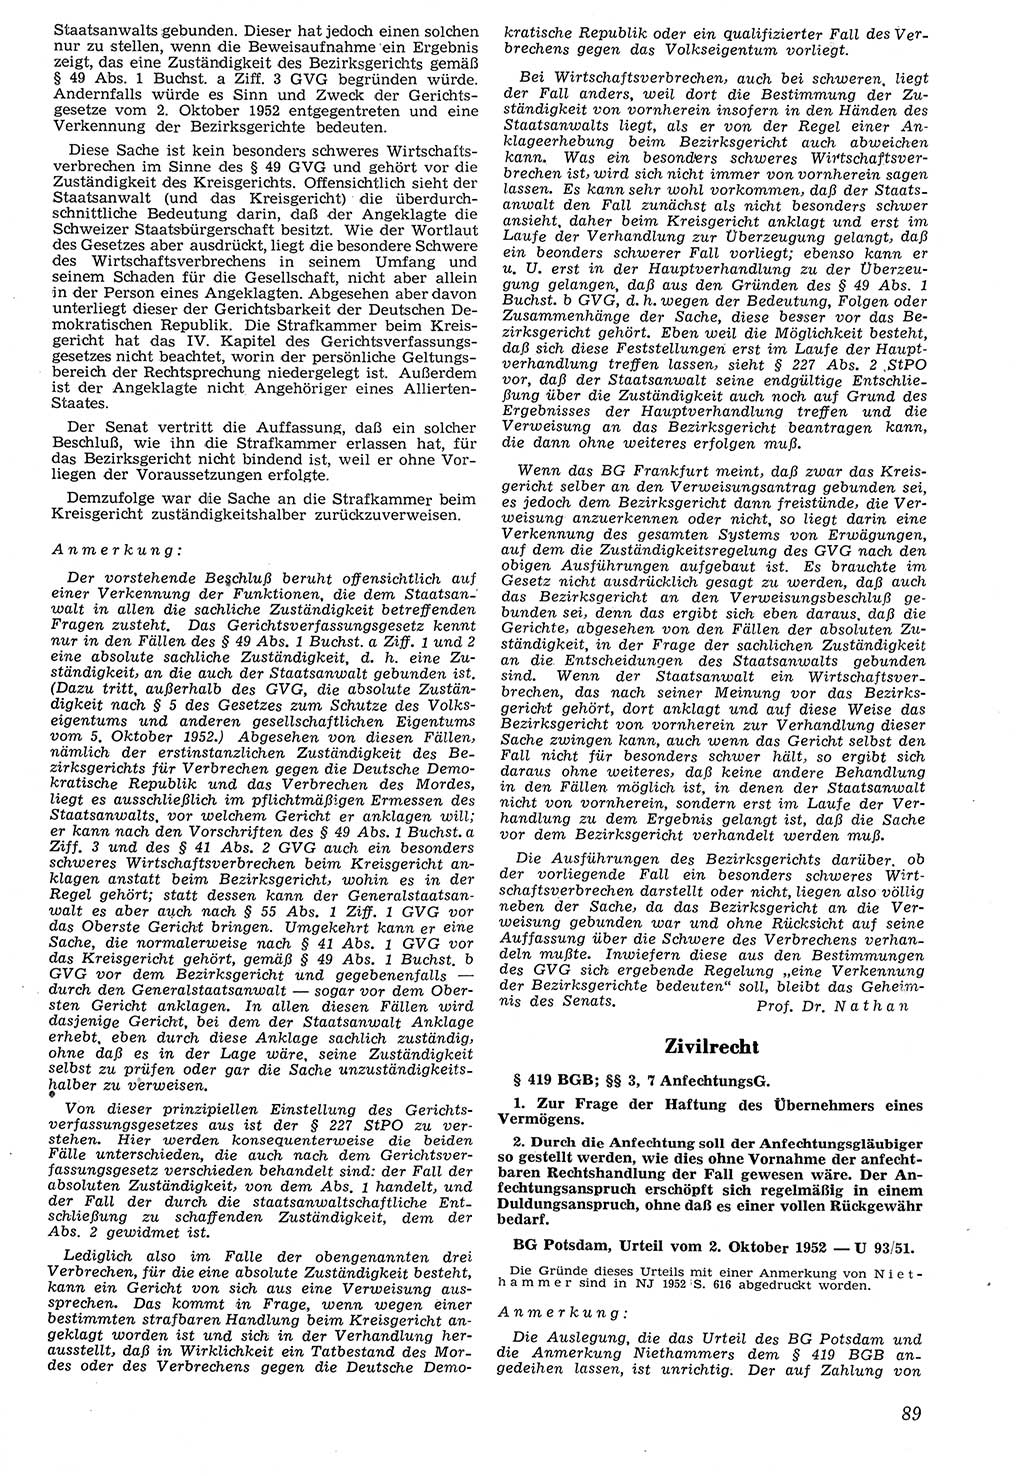 Neue Justiz (NJ), Zeitschrift für Recht und Rechtswissenschaft [Deutsche Demokratische Republik (DDR)], 7. Jahrgang 1953, Seite 89 (NJ DDR 1953, S. 89)